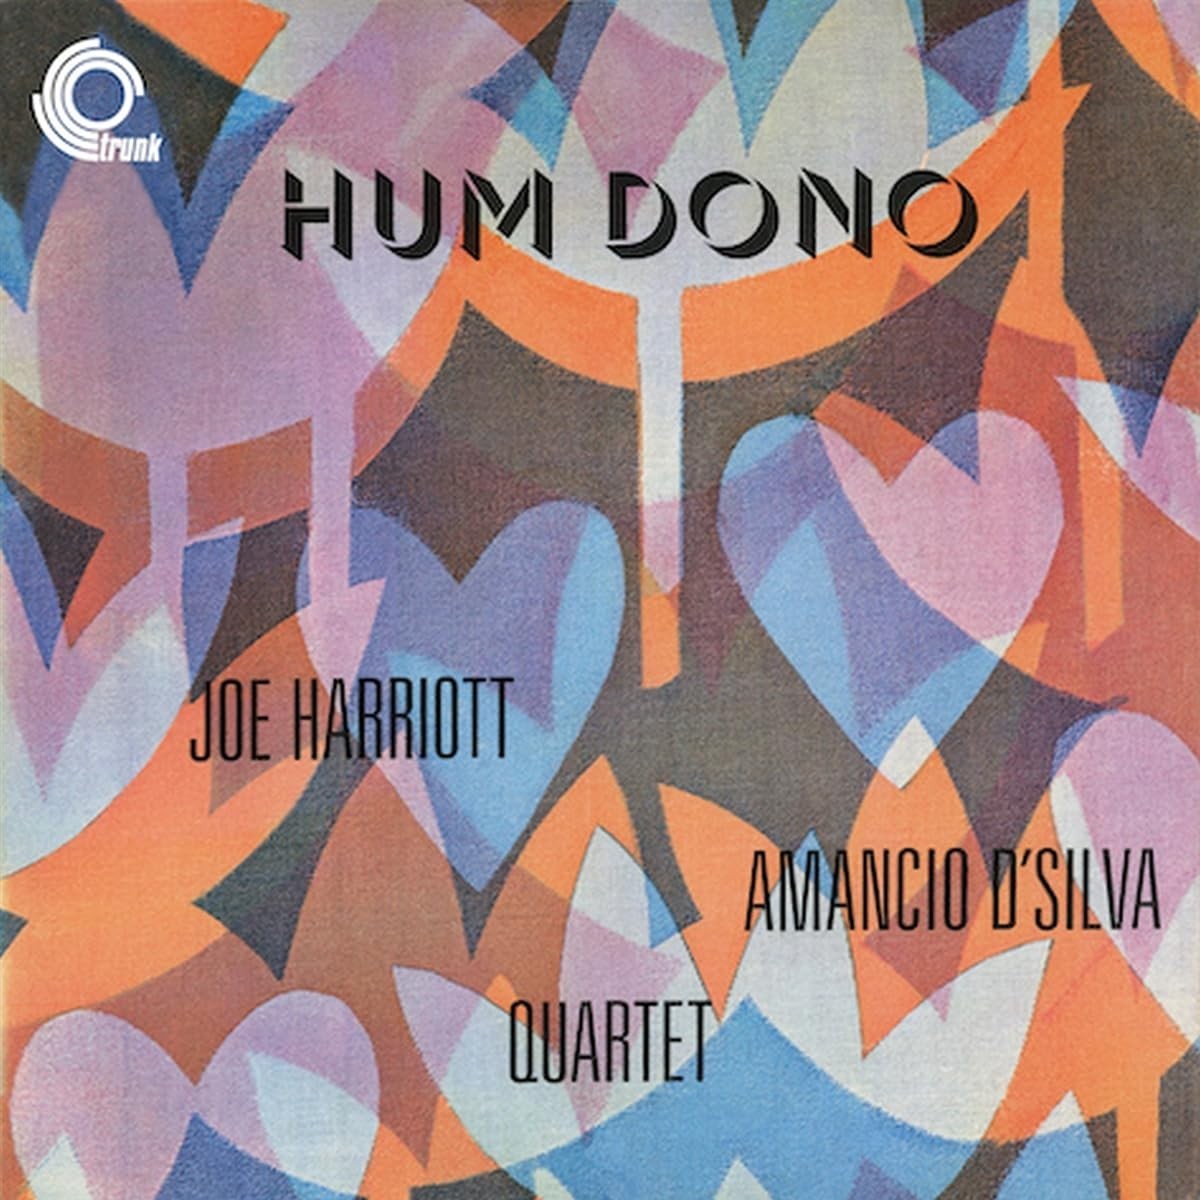 Joe Harriot & Amancio D'Silva Quartet - Hum Dono